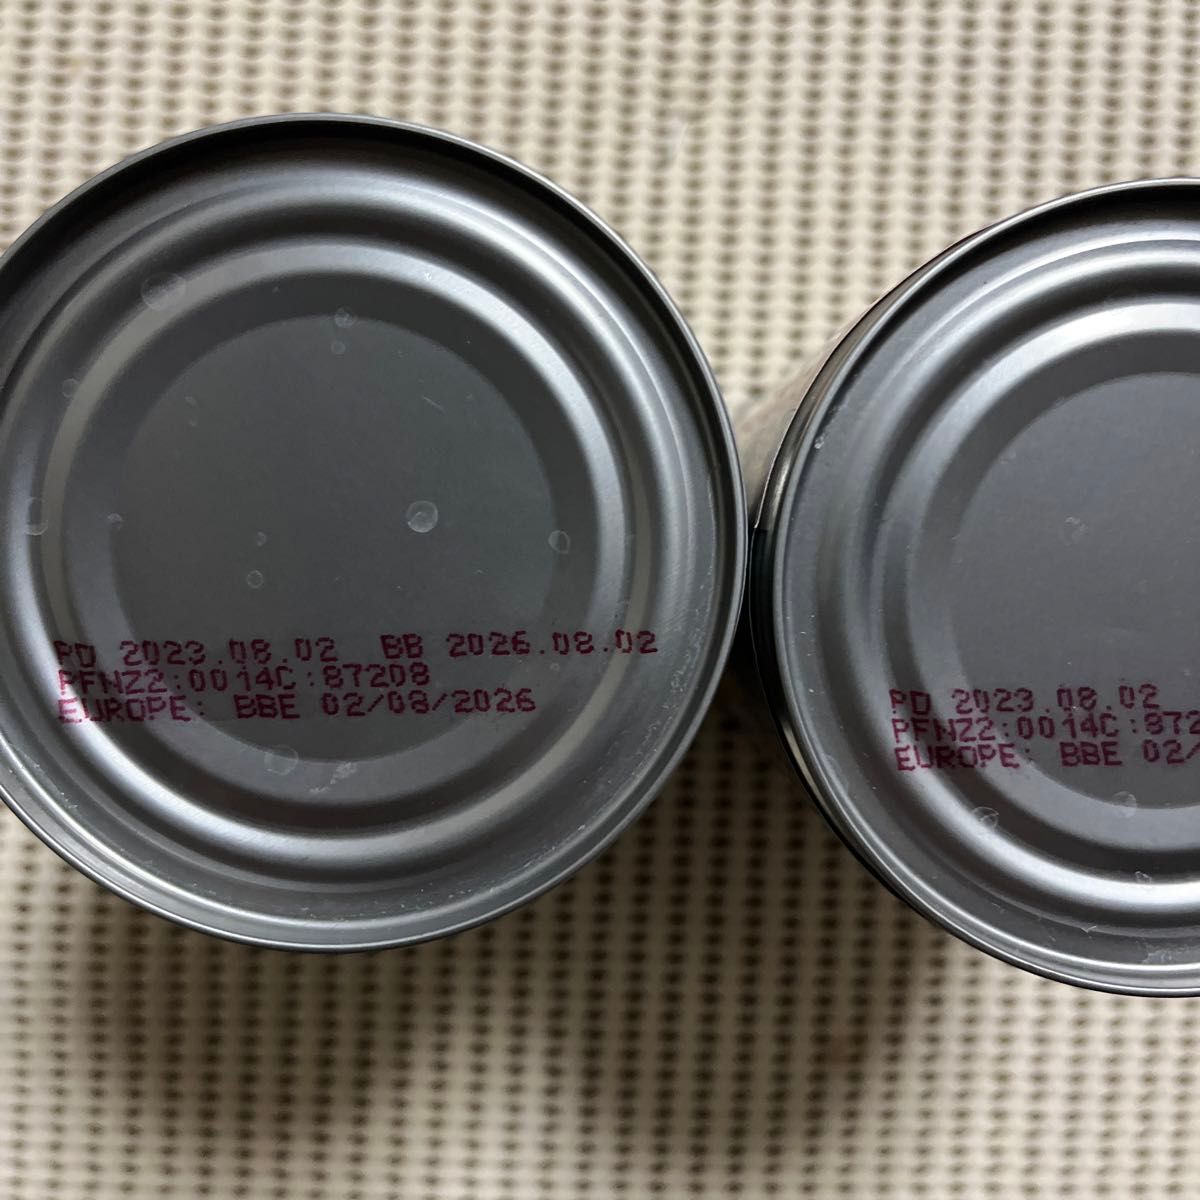 ZIWI  ジウィピーク ドッグ缶 ベニソン ドッグフード　390g  2個セット 【お値下げ不可】